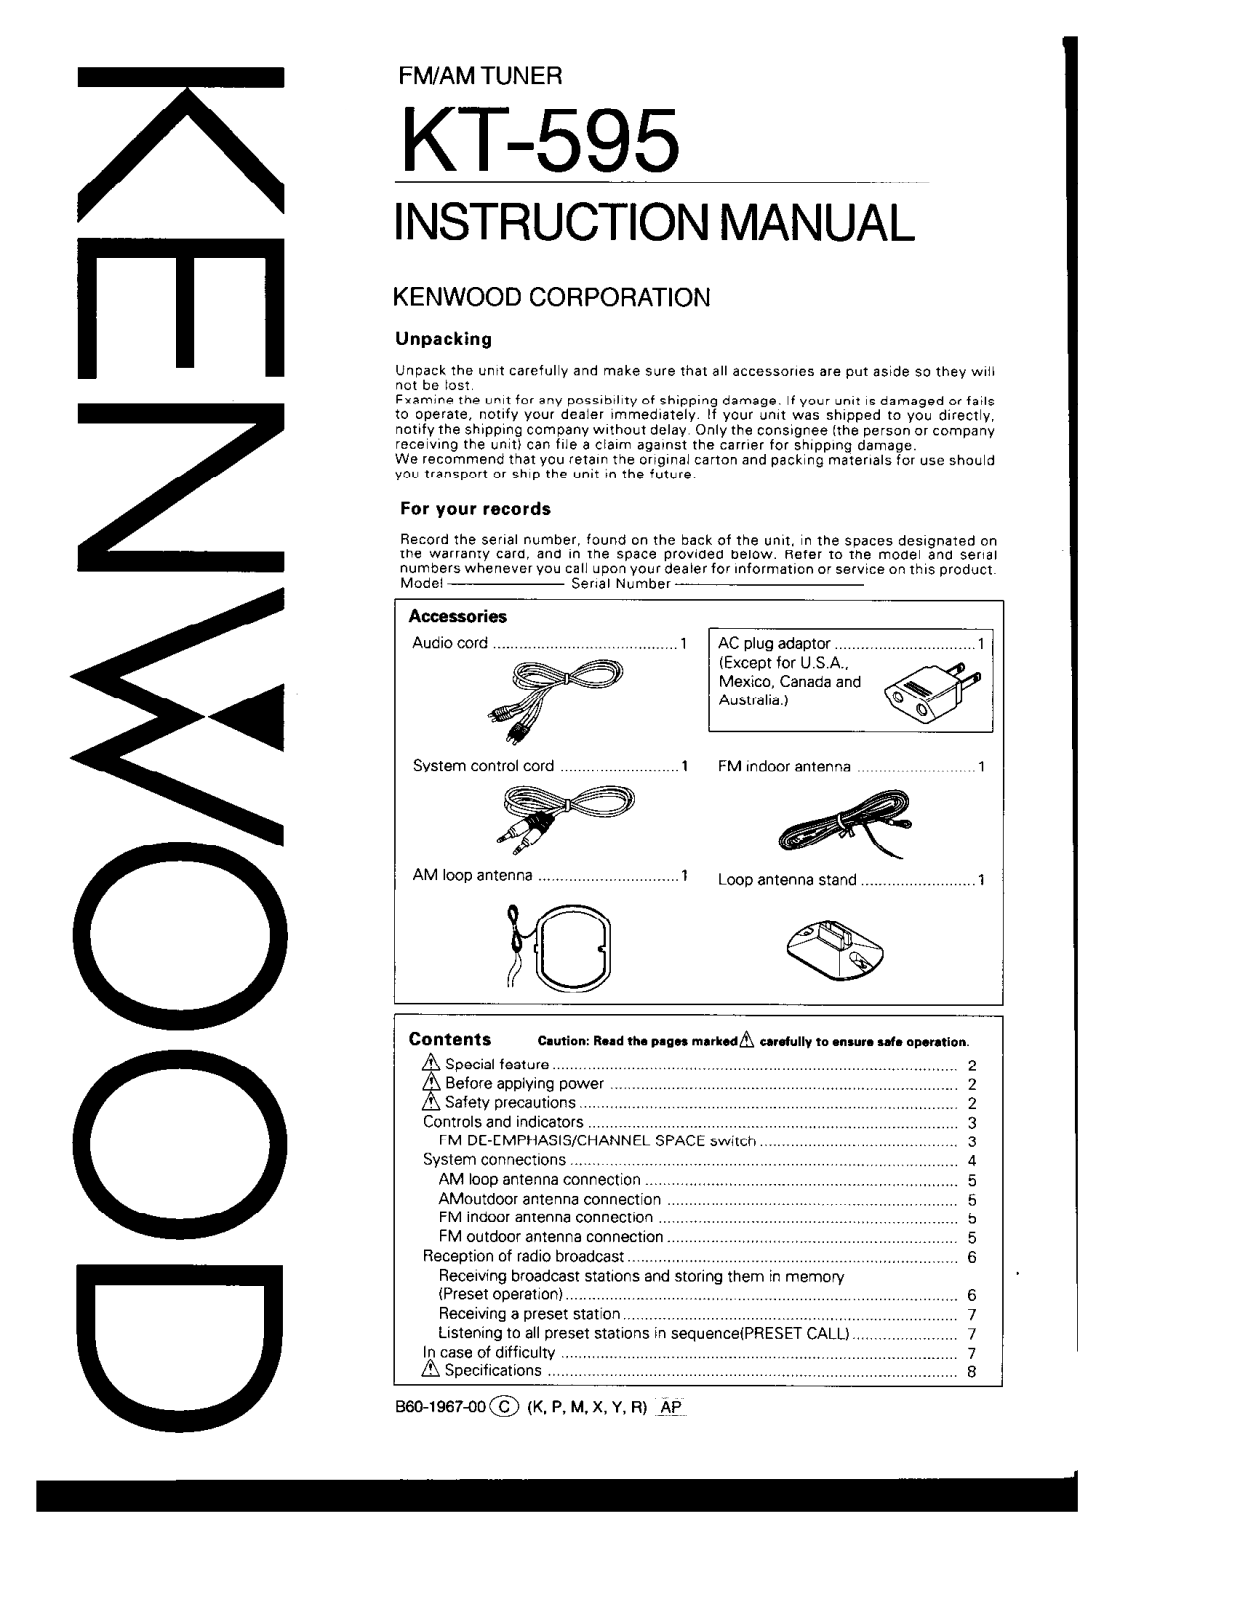 Kenwood KT-595 Owner's Manual